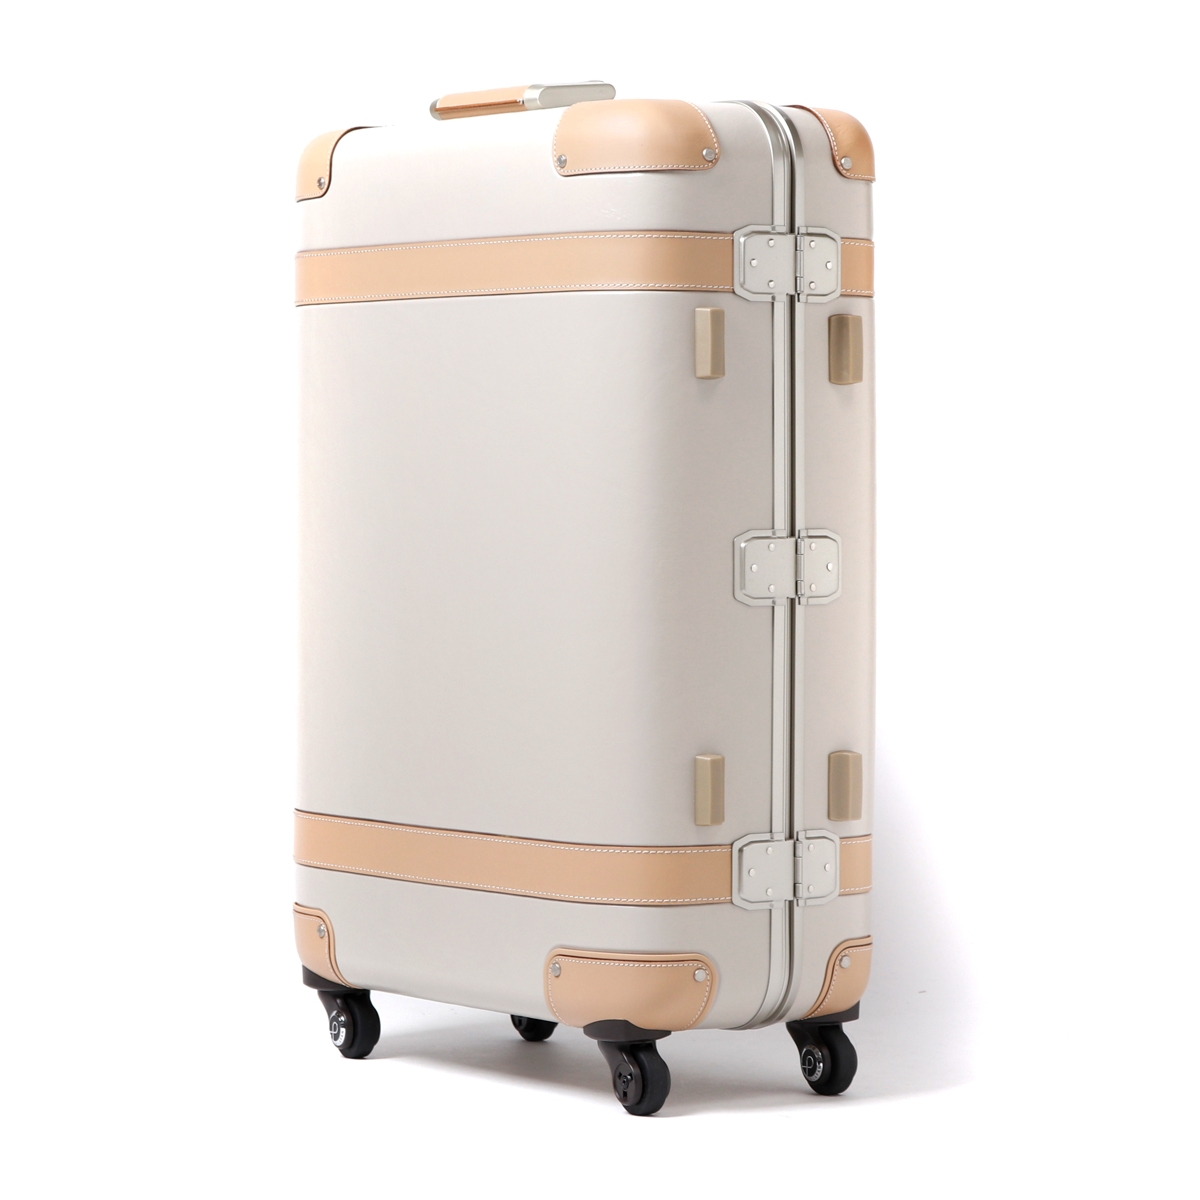 スピード対応 全国送料無料 ビジネスバグズプロテカ スーツケース Lサイズ 85L 軽量 大容量 フレームタイプ エース ジーニオセンチュリー ace  PROTeCA 00513 在庫限り cop20